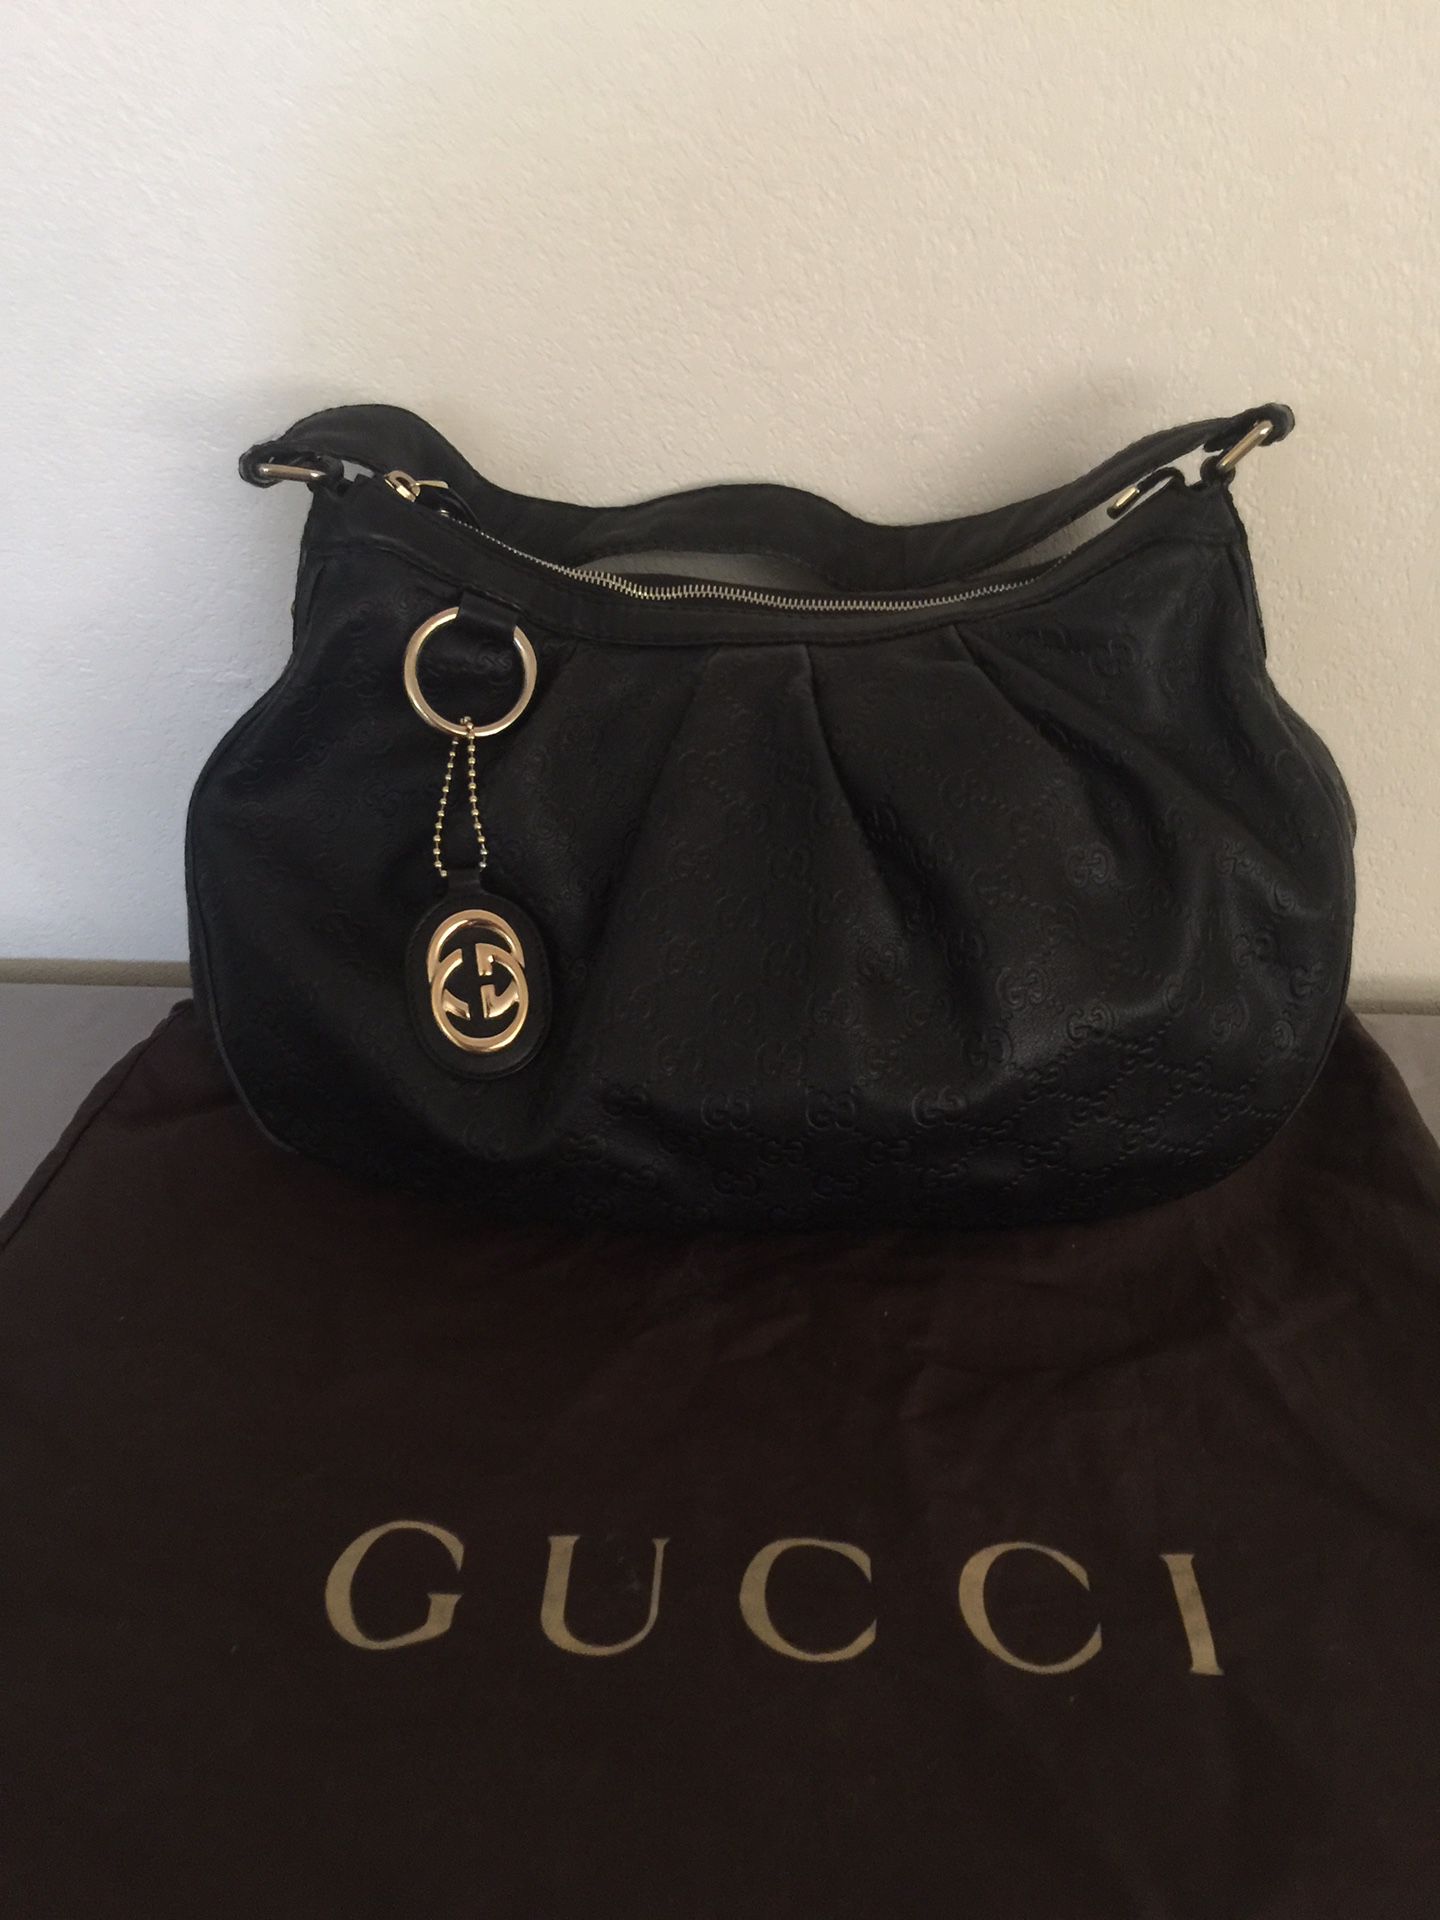 Gucci black color bag